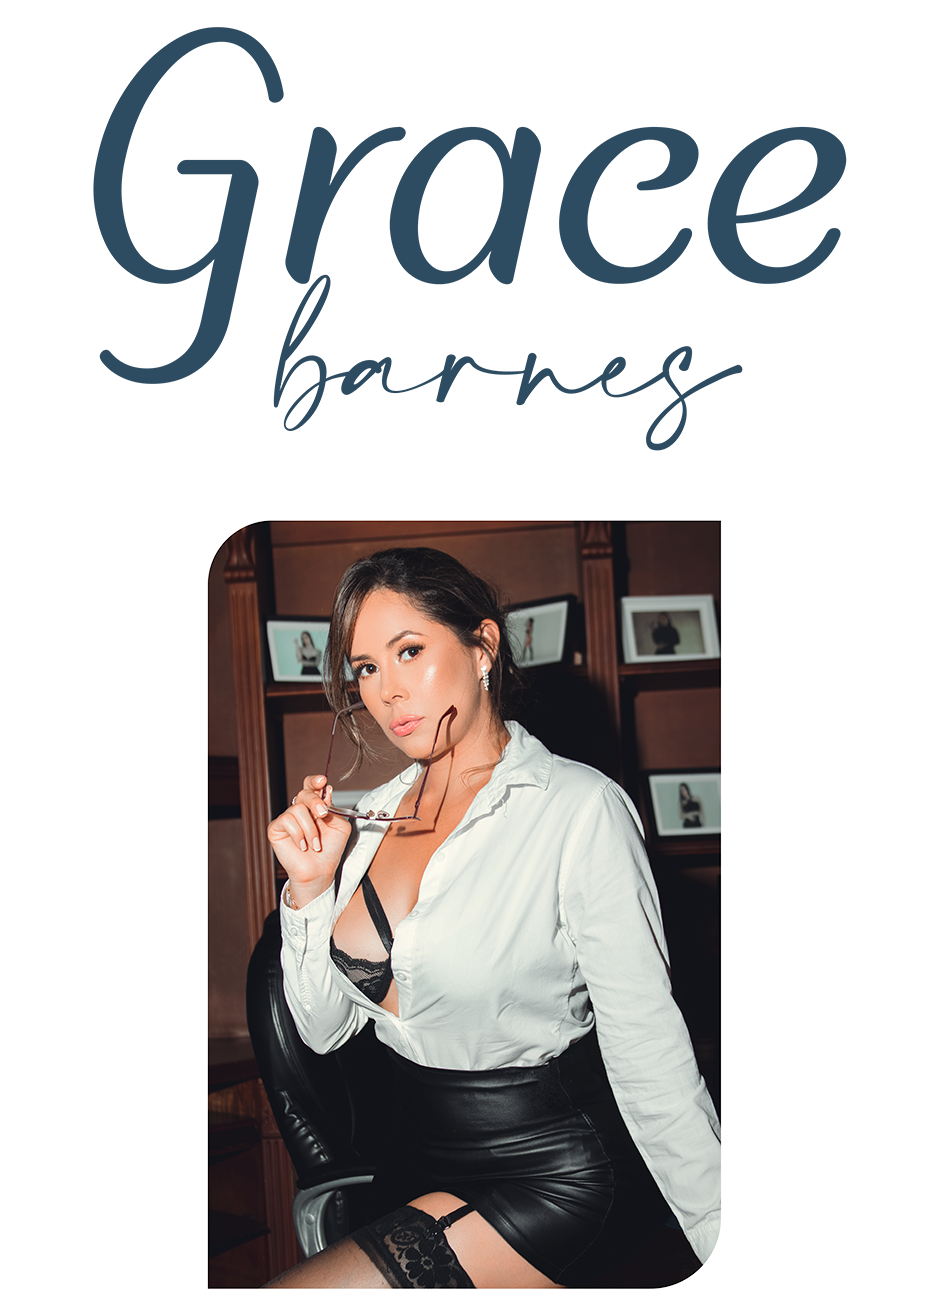 GraceBarnes Welcome image: 1